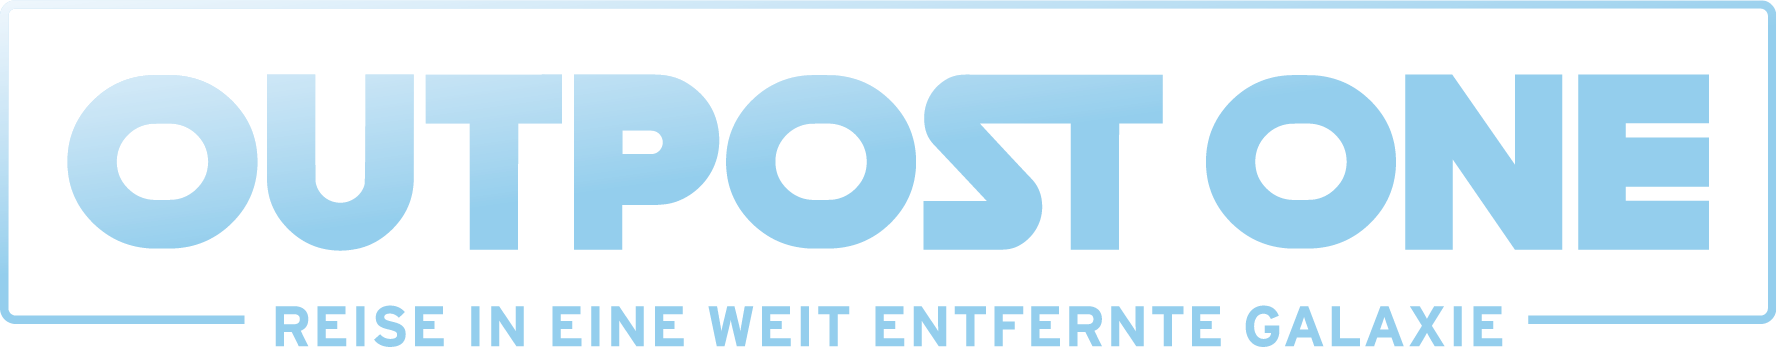 Outpost_Logo_Verlauf_Claim